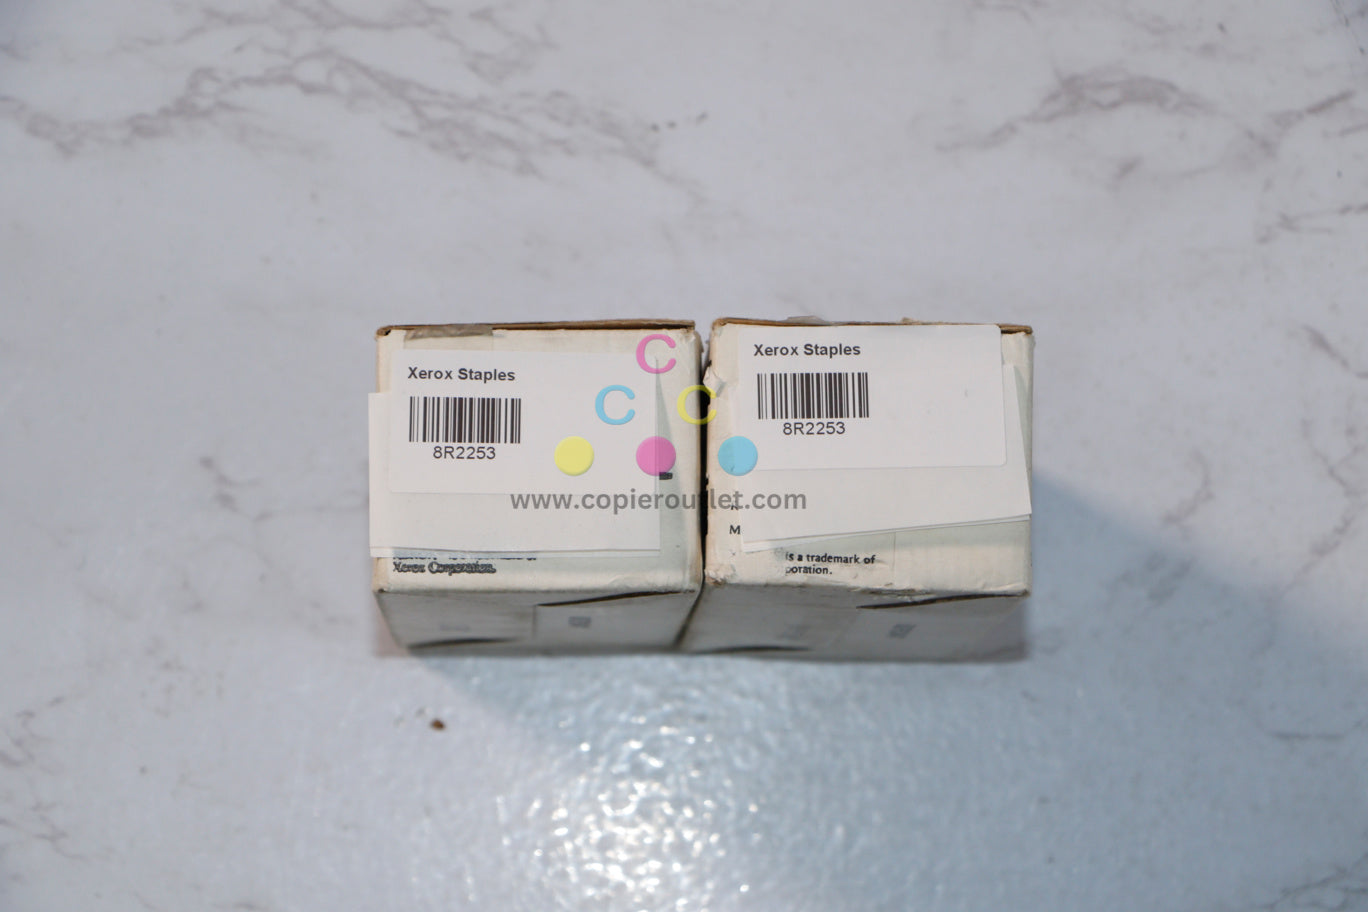 2 Cosmetic OEM Xerox 1065, 5018, 5028, 5028Z, 5034 8R2253 (008R2253) 5 Pack Staples